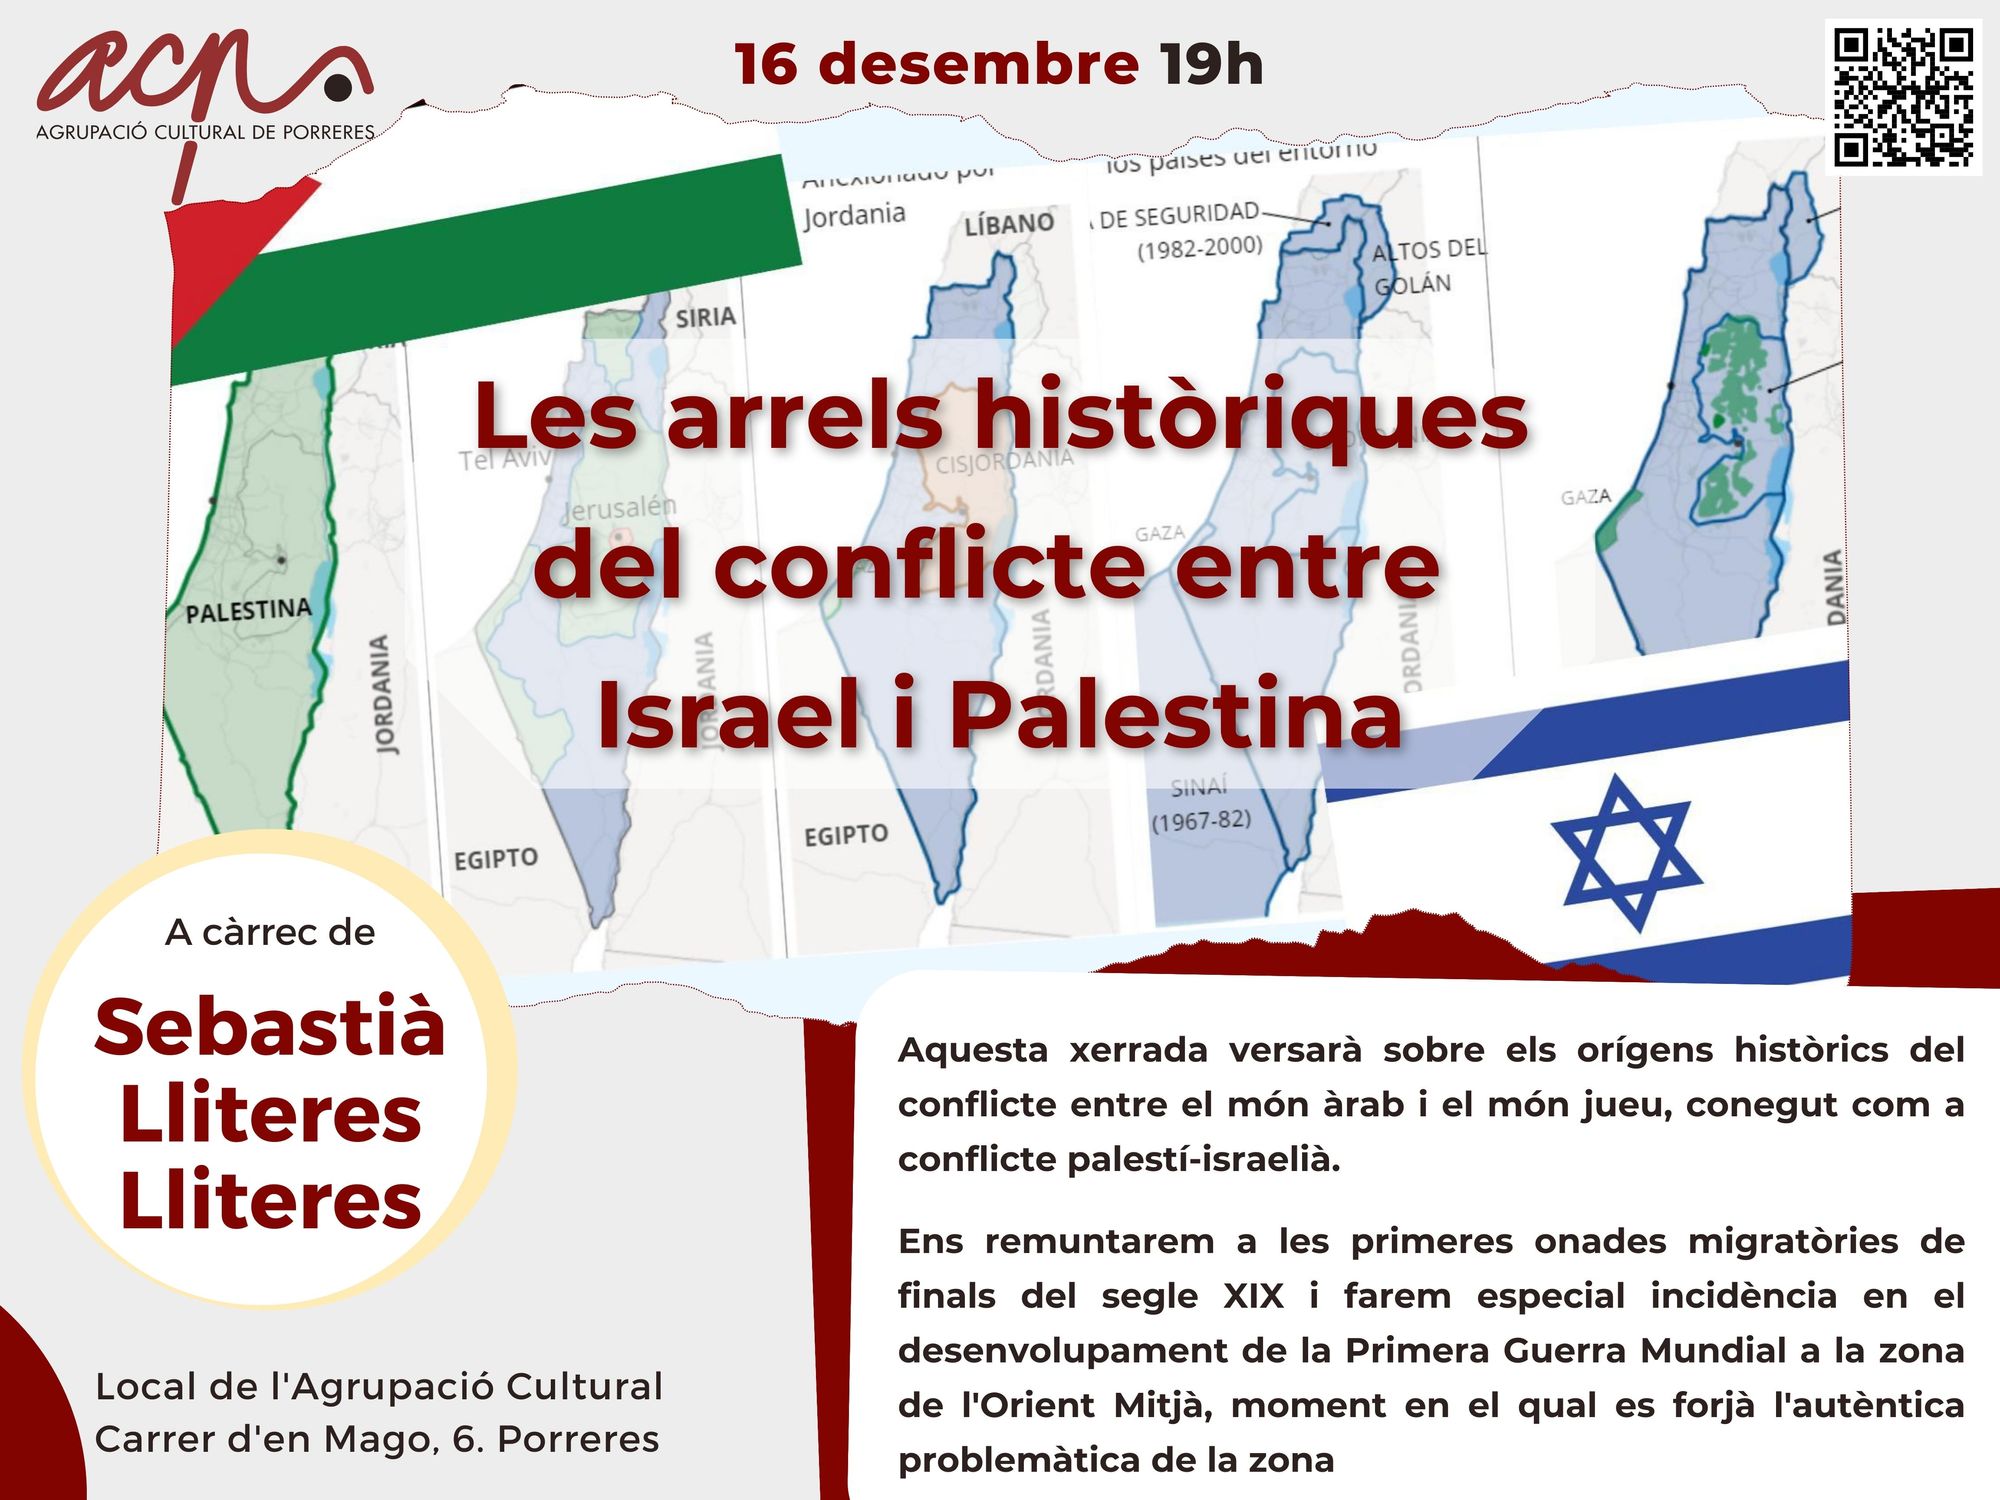 Les arrels històriques del conflicte entre Israel i Palestina